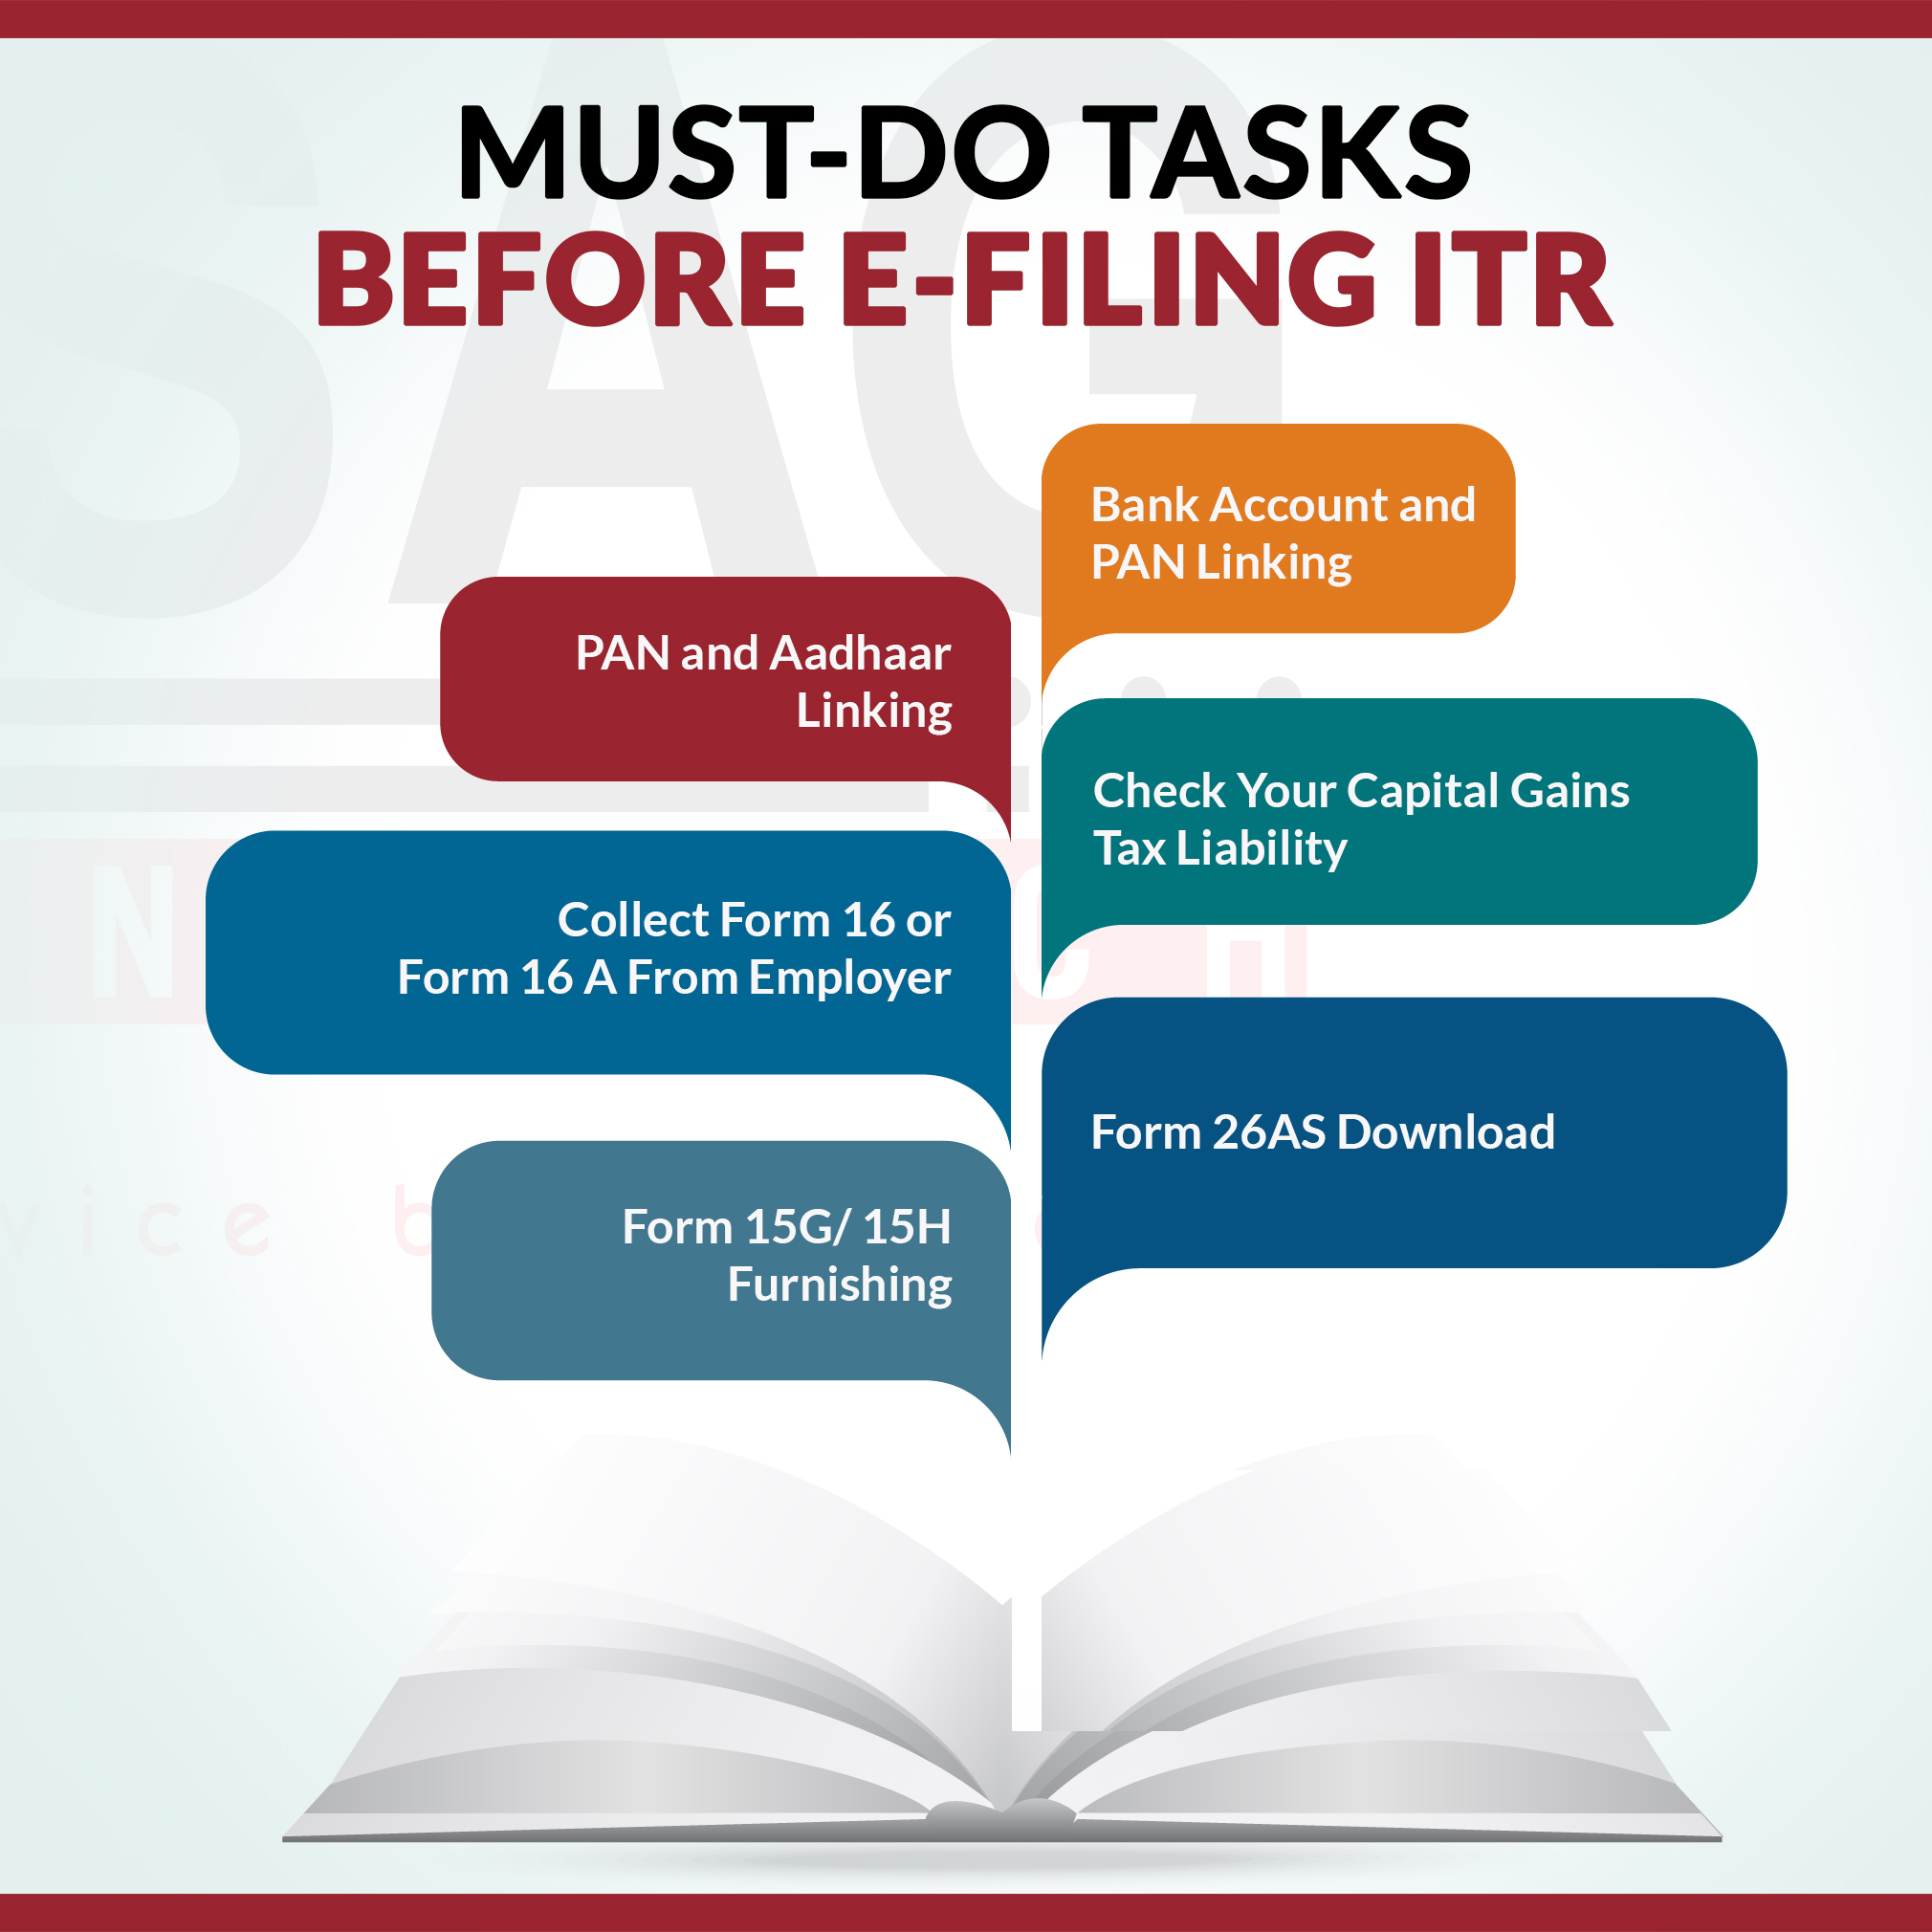 All Mandatory Tasks Needed Before ITR Filing for AY 2021-22